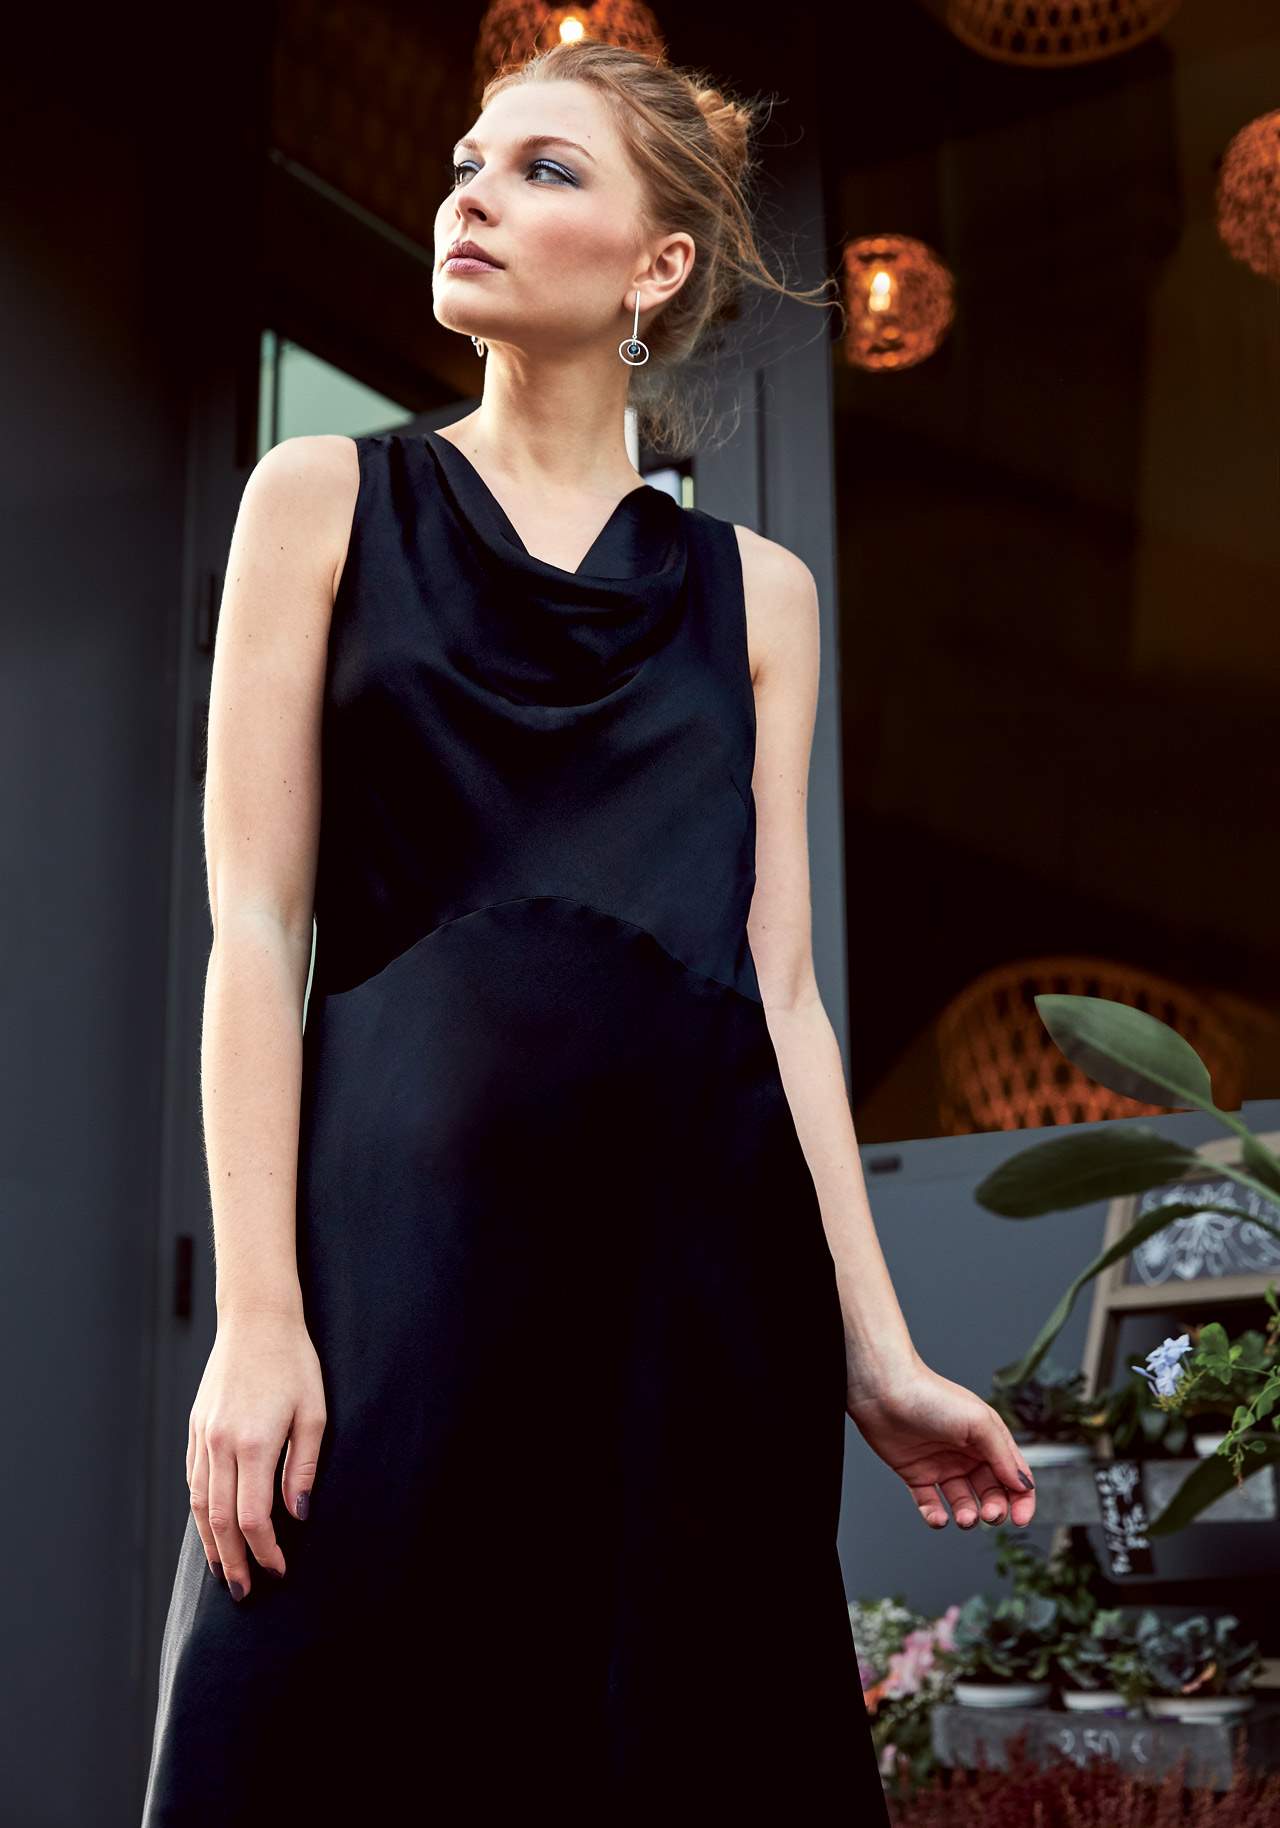 CLARA C&A NAVIDAD looks La elegancia del vestido negro